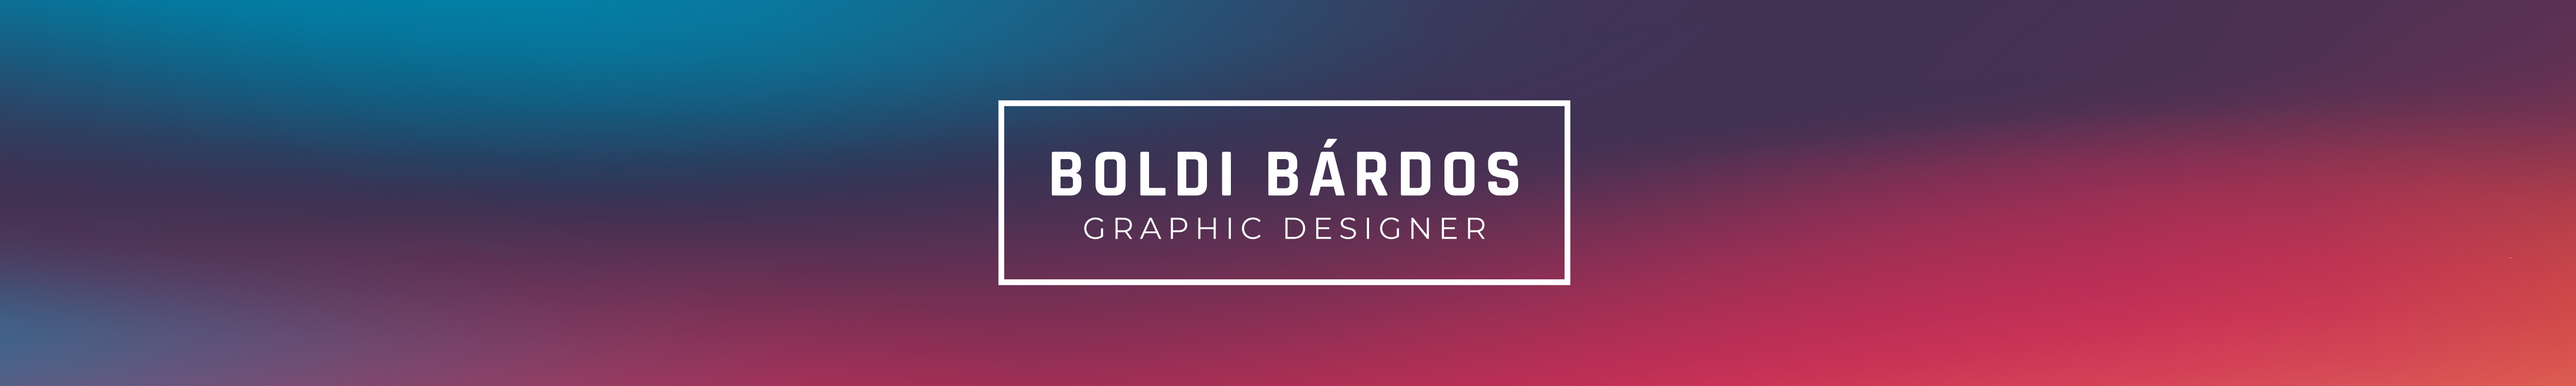 Boldi Bárdos profil başlığı